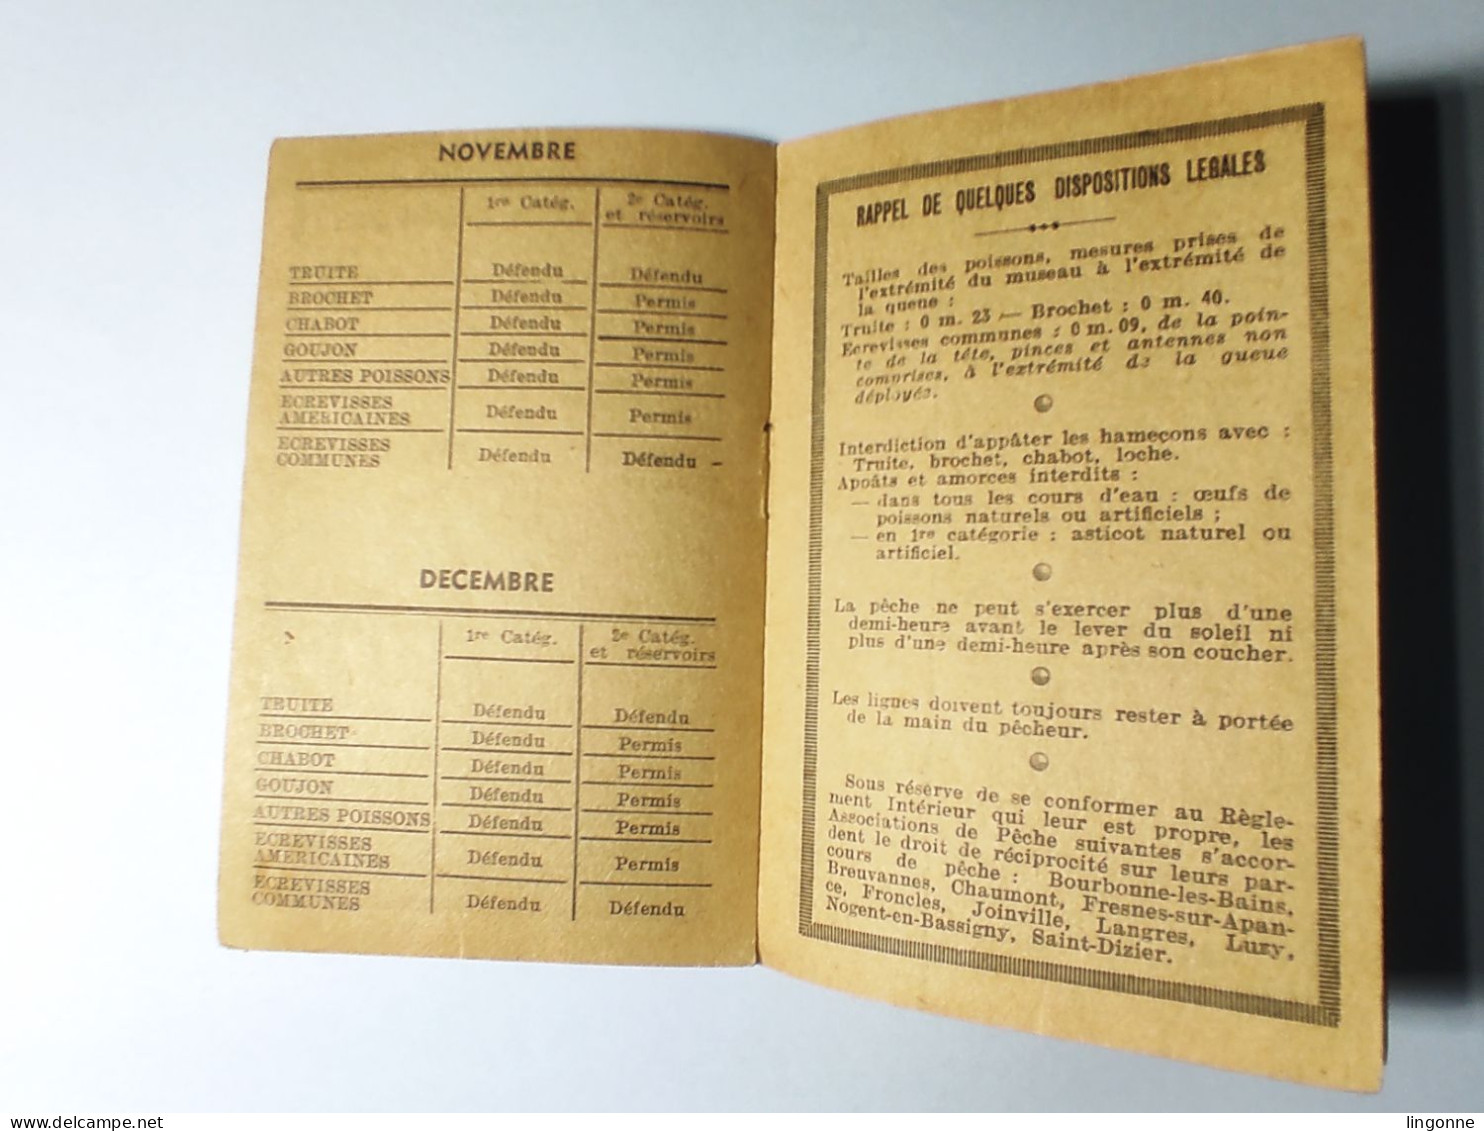 1963 Calendrier De La Pêche En Haute Marne 52 -  Classement Des Cours D'Eau, Poissons. Imp De L'EST CHAUMONT - Kleinformat : 1961-70